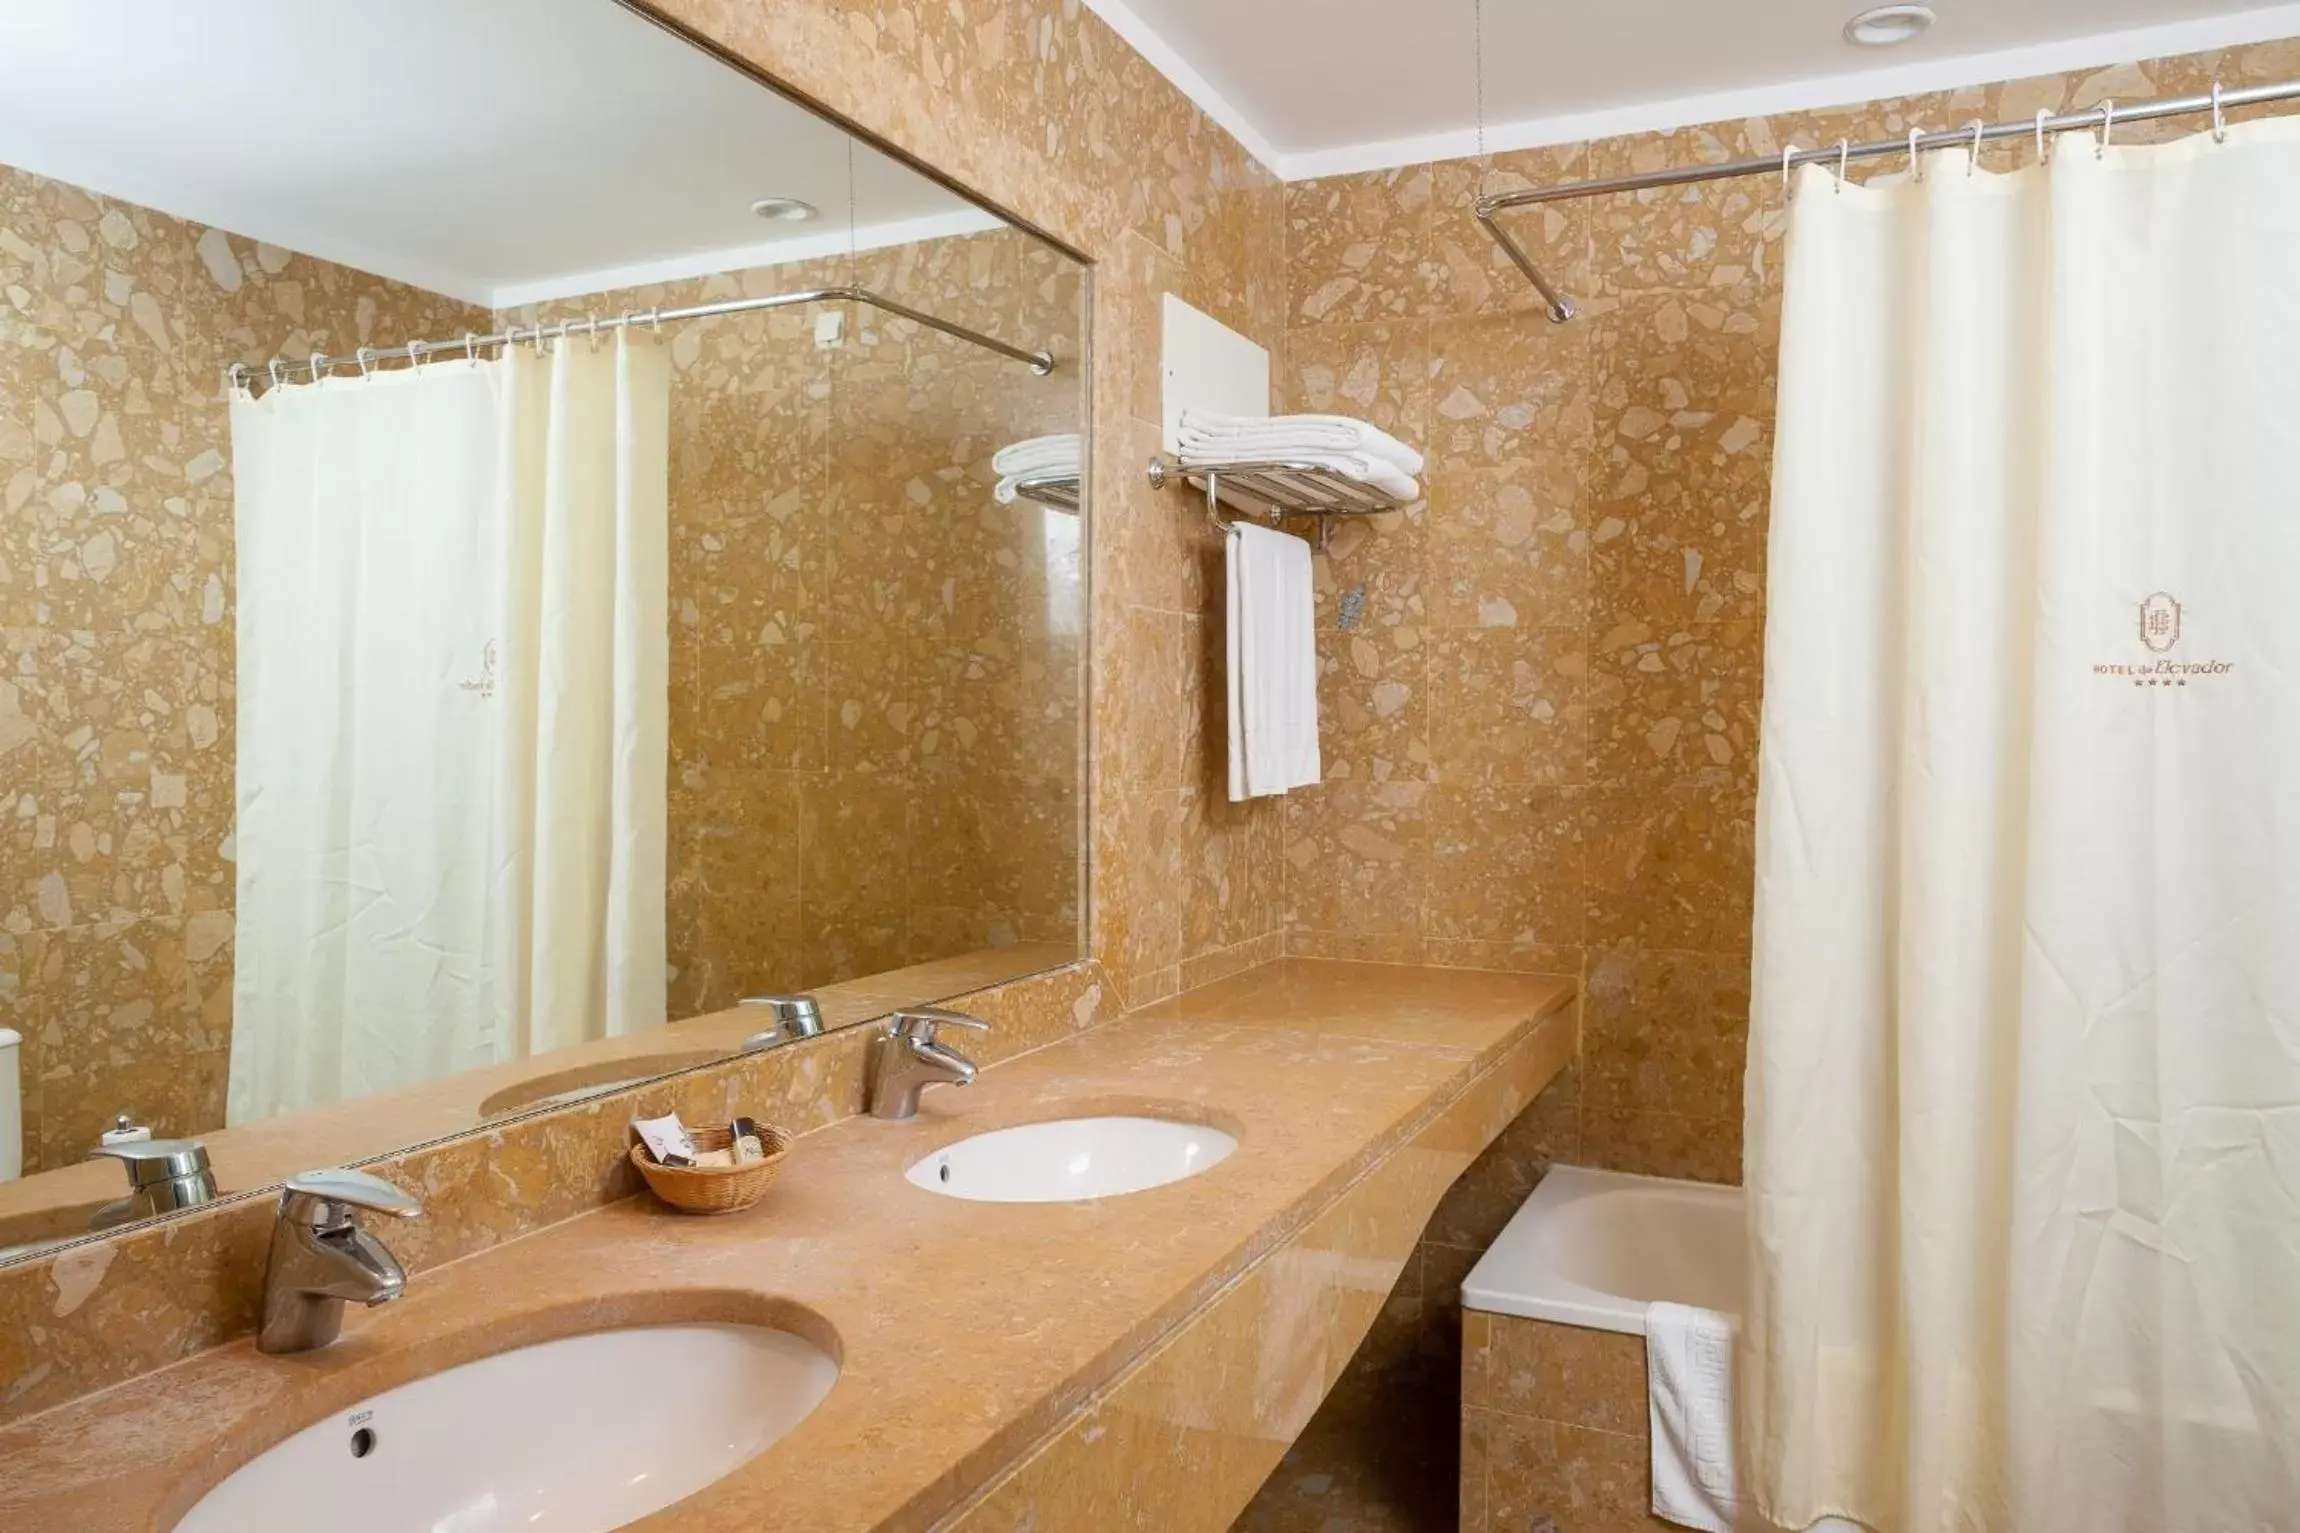 Bathroom in Hotel do Elevador